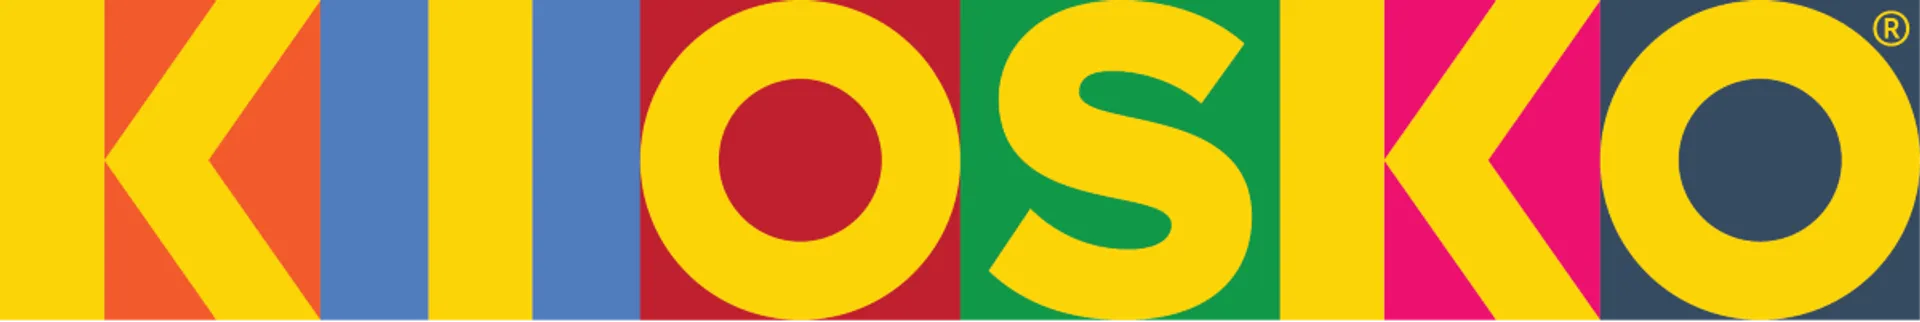 KIOSKO logo